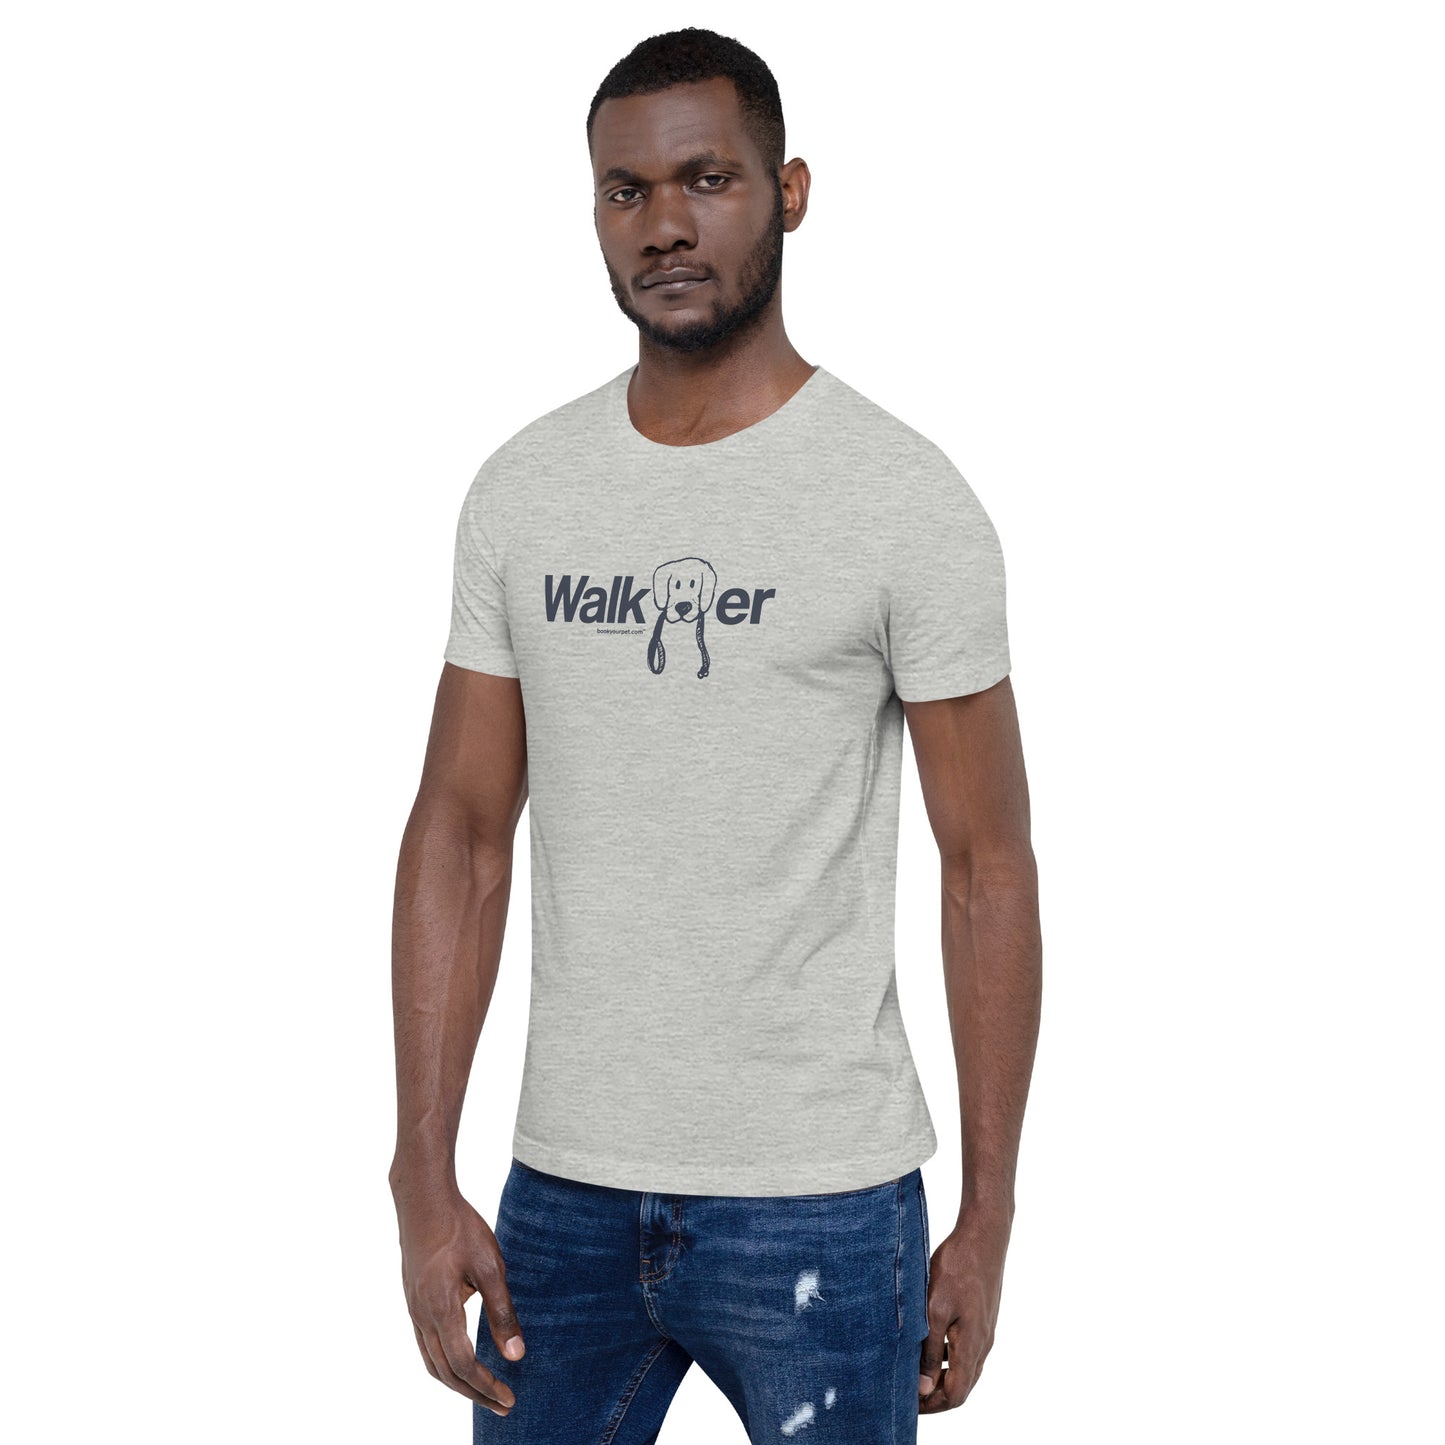 Unisex Walker t-shirt